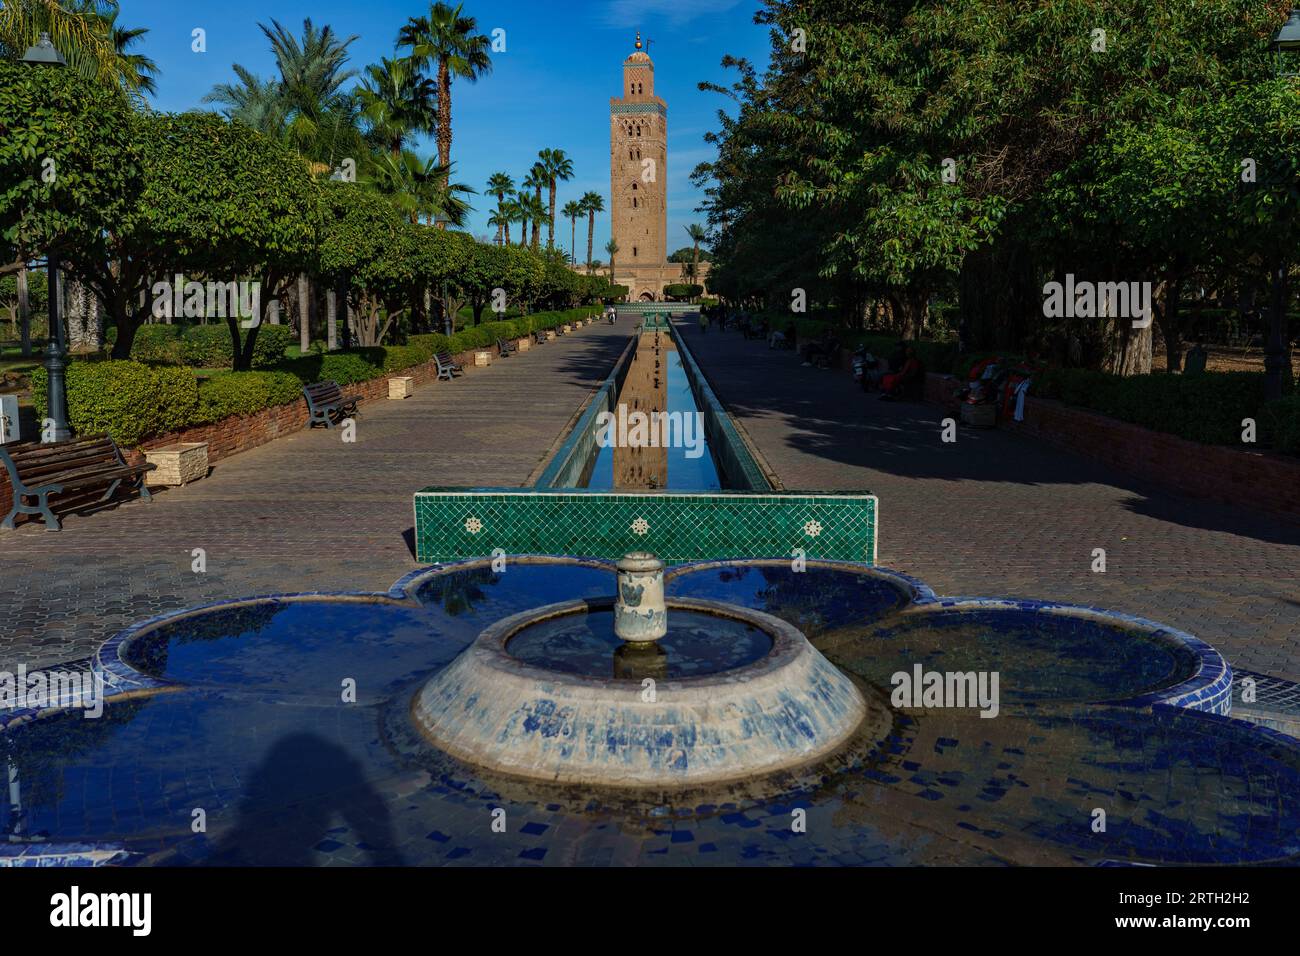 Afrique du Nord. Maroc. Marrakech. Le minaret de la mosquée Koutoubia avec jardins, fontaine et canaux. Banque D'Images